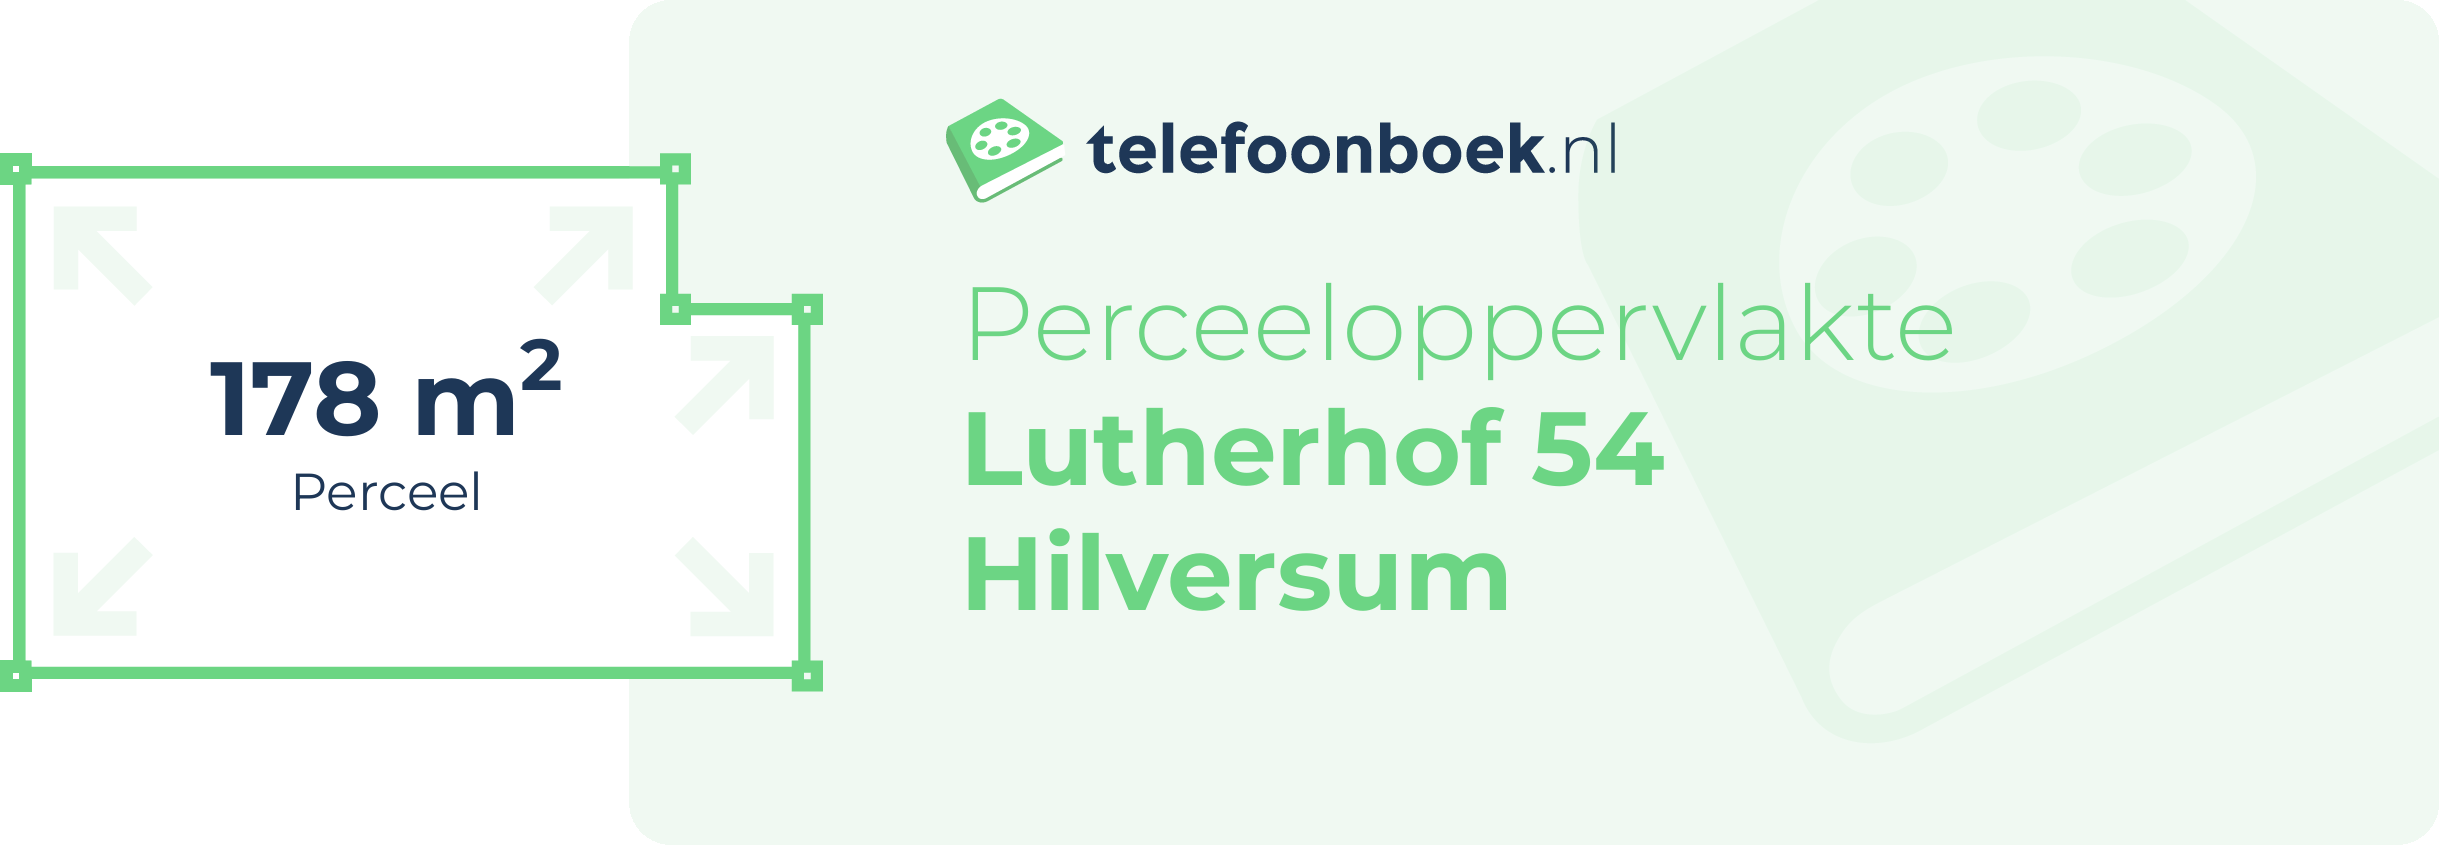 Perceeloppervlakte Lutherhof 54 Hilversum